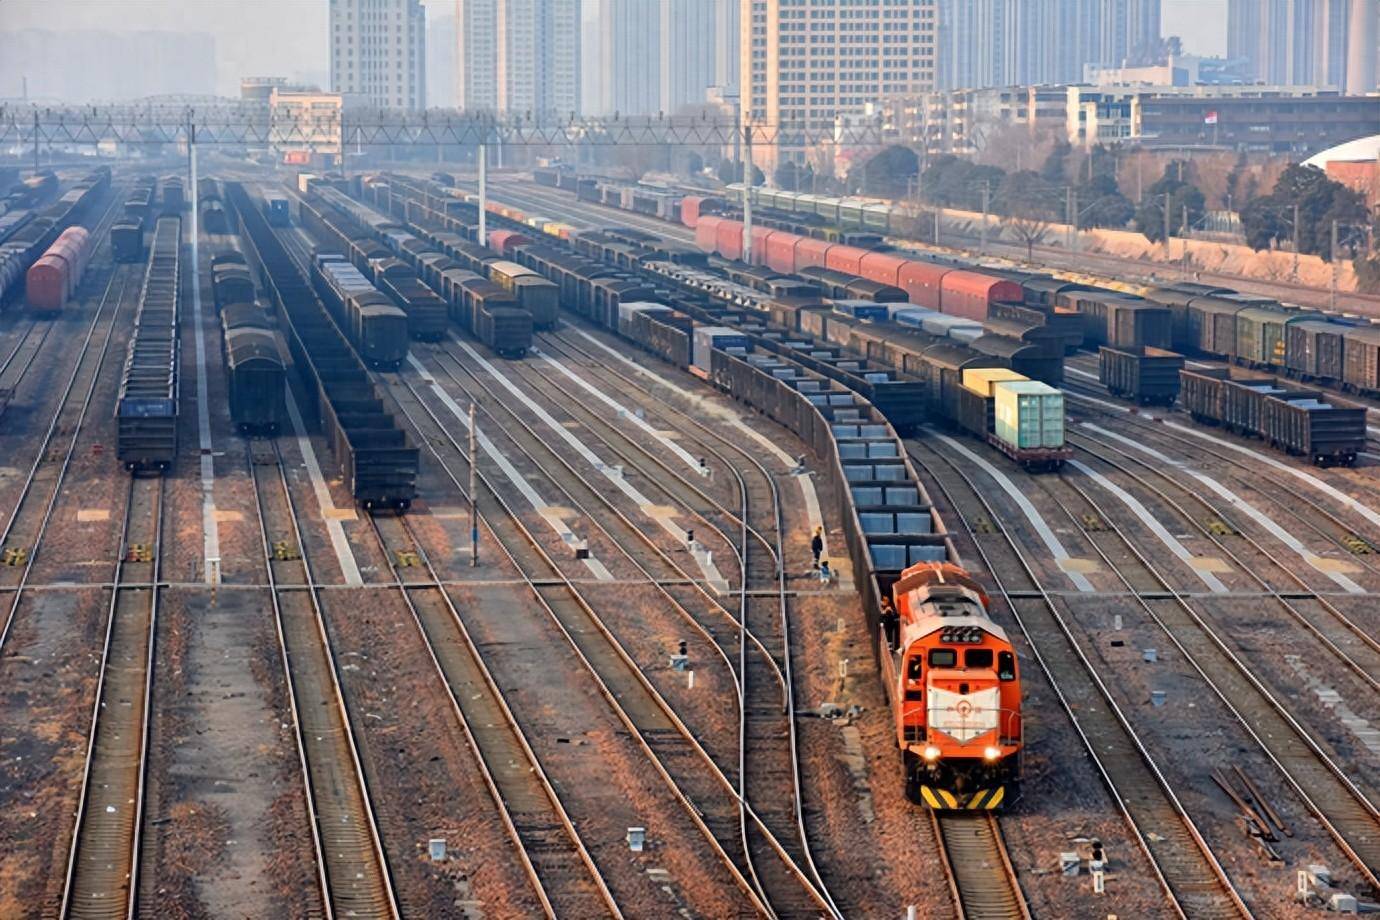 6月15日起,郑州铁路实行新的列车运行图